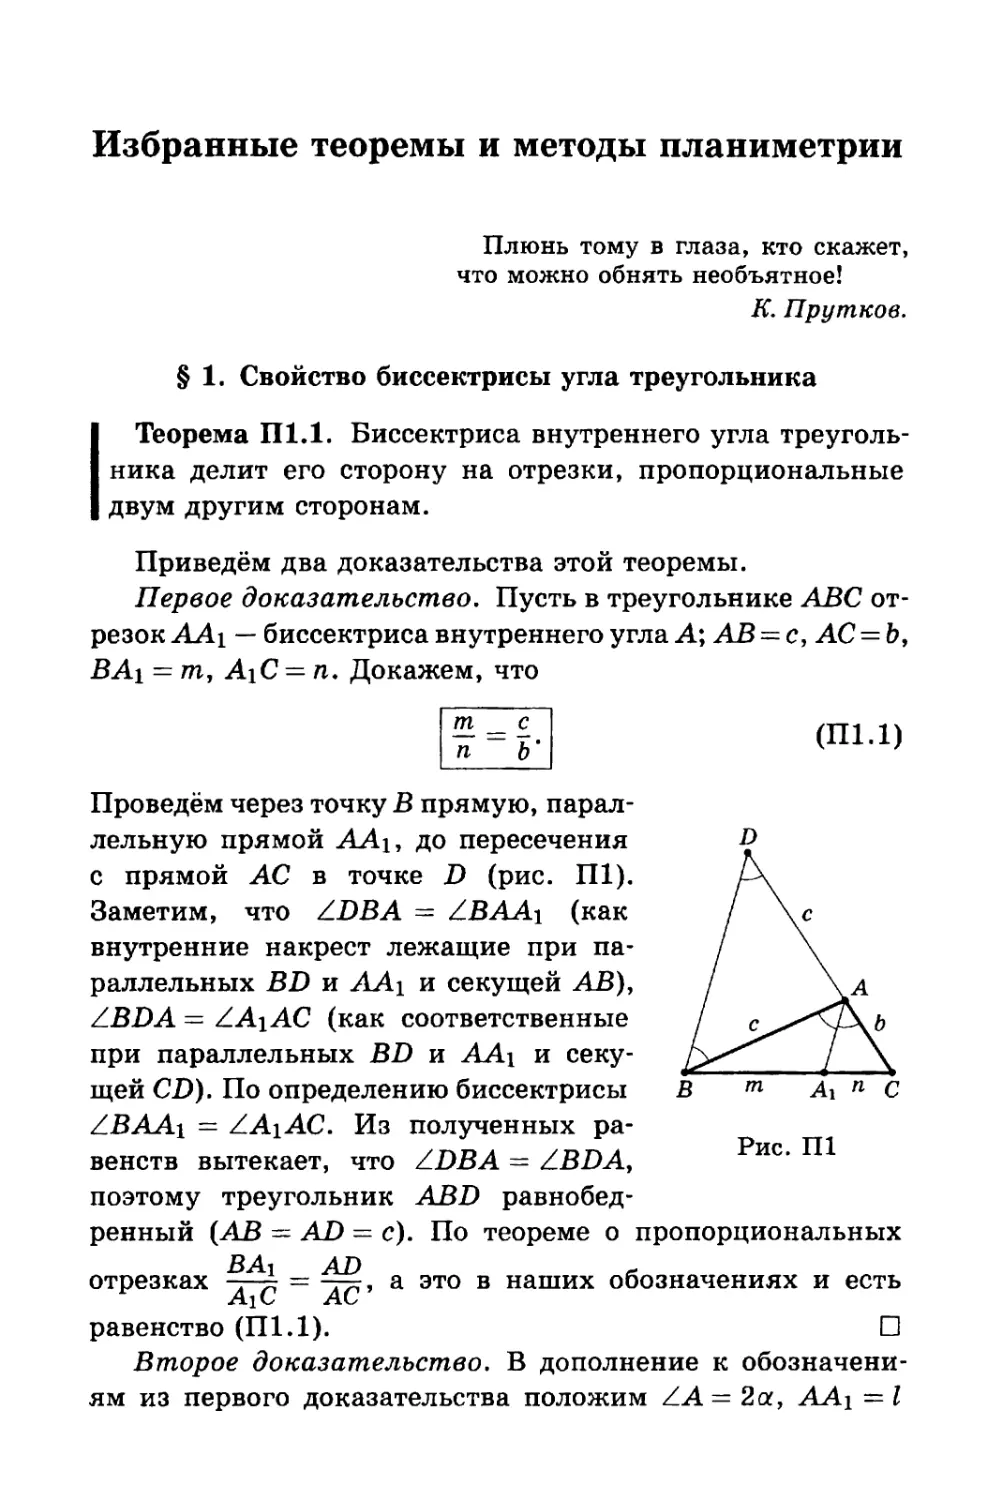 Избранные теоремы и методы планиметрии